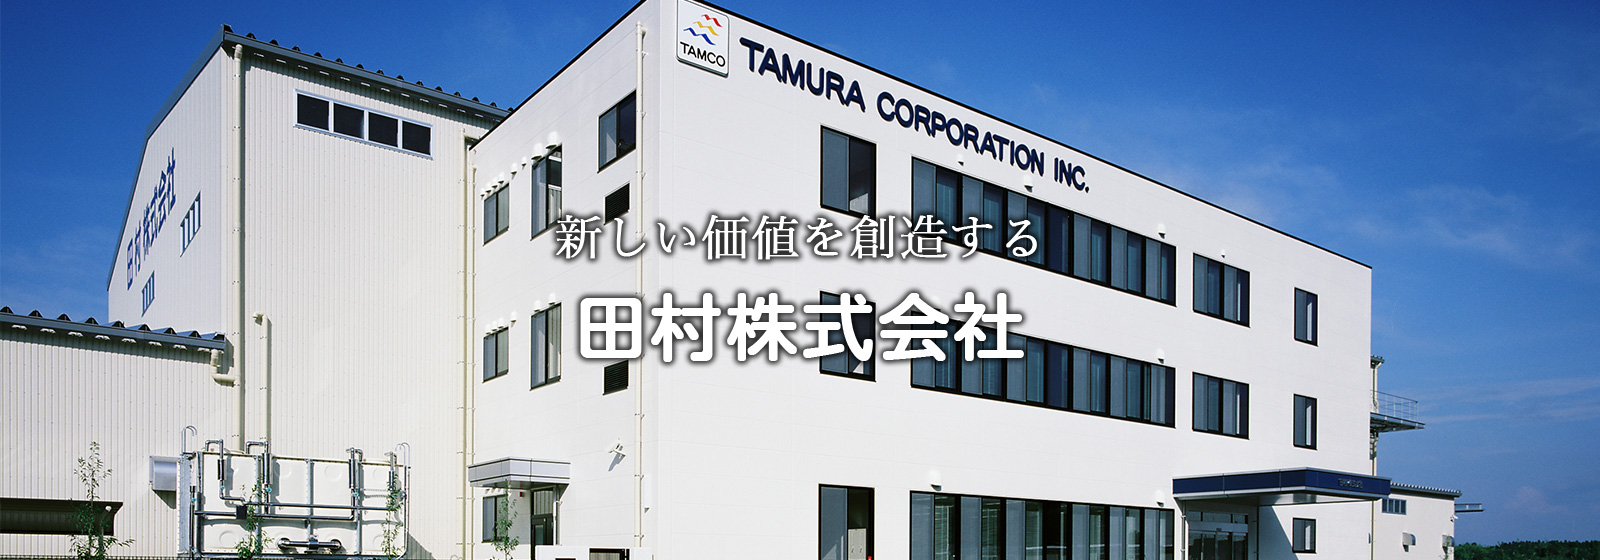 新しい価値を創造する田村株式会社